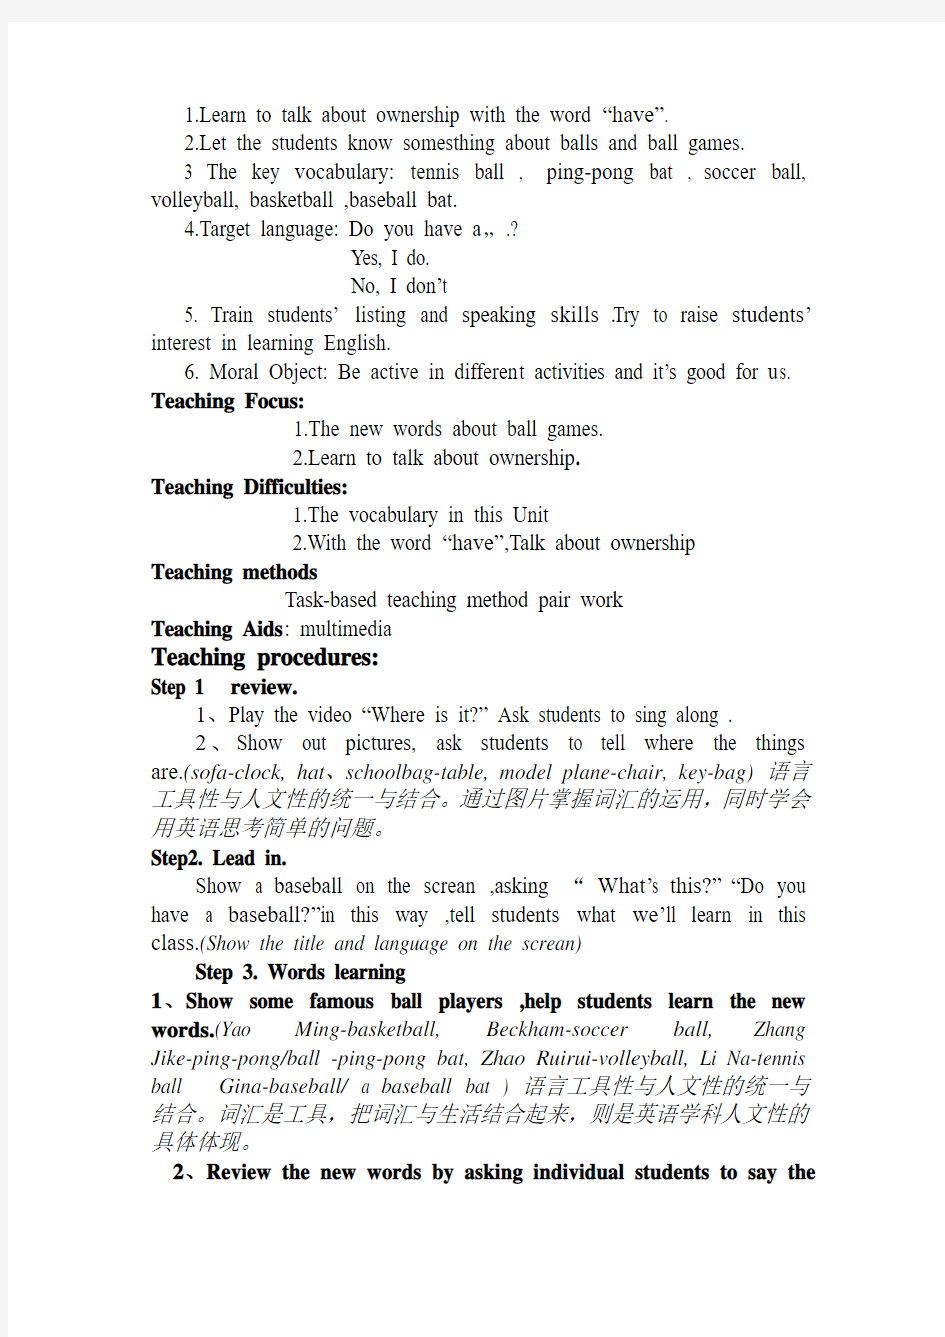 安徽中小学教师培训《义务教育英语课程标准(2011年版)》的修订理念、思路与主要变化作业